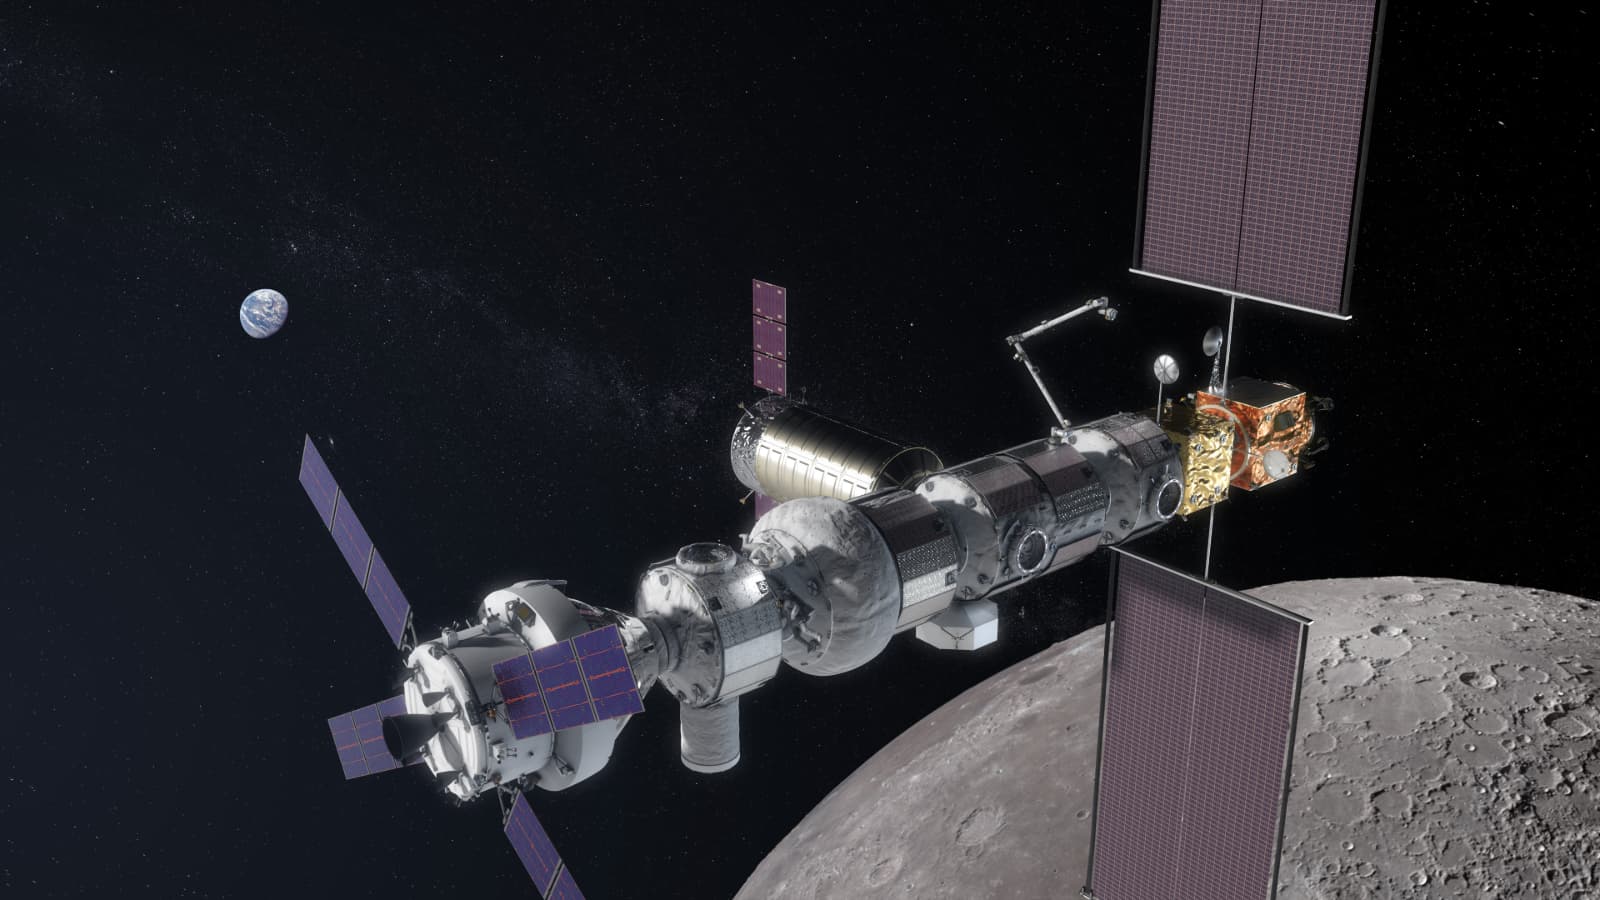 השלב הראשון בתוכנית החדשה של נאס"א: להשתמש בתחנת החלל הירחית, שטרם נבנתה כמובן, כפלטפורמה לנחיתות על הירח עד 2024. הדמיה: נאס"א